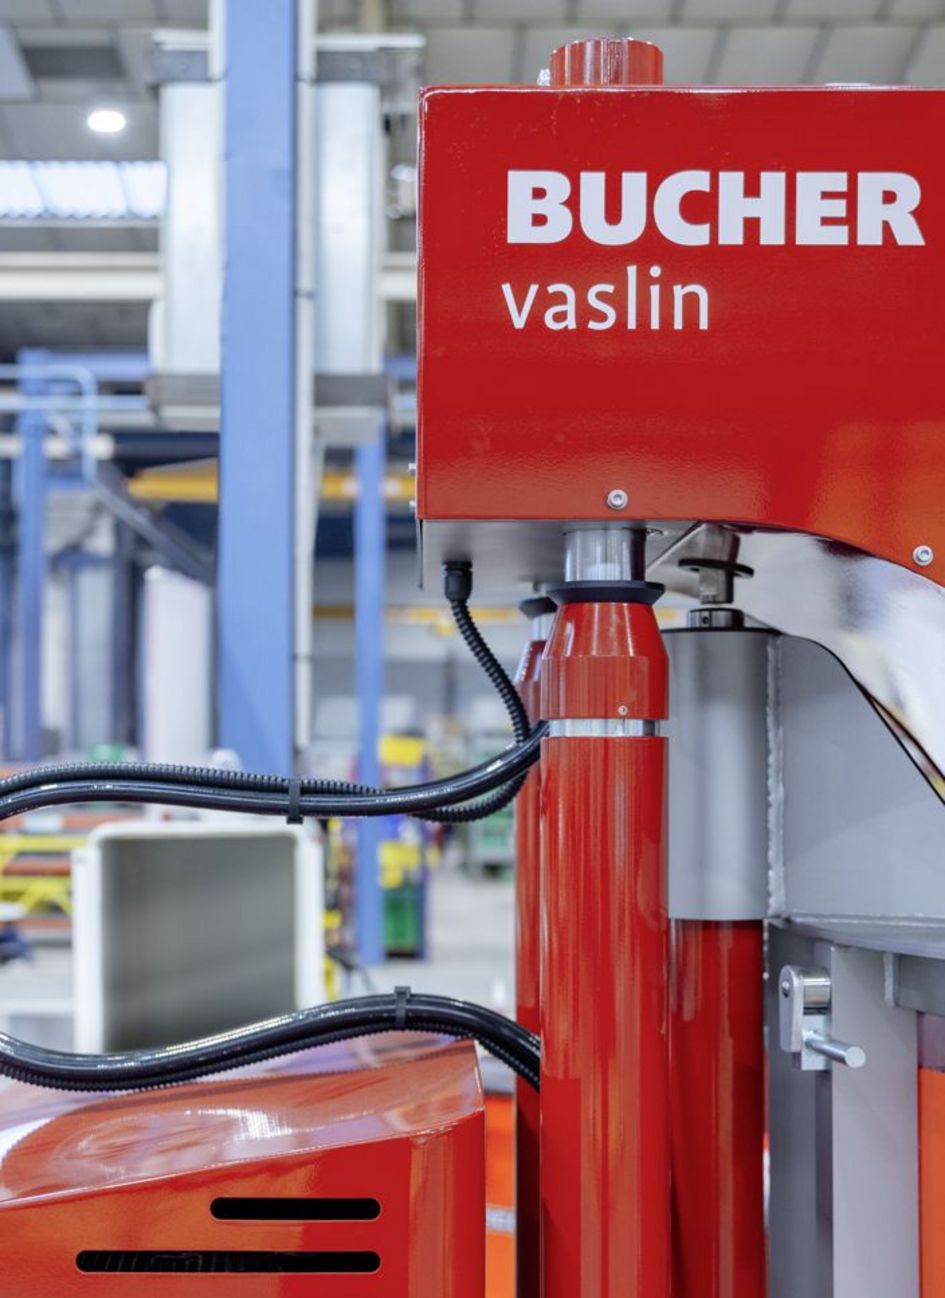 Bucher Vaslin Maschine Weinpresse